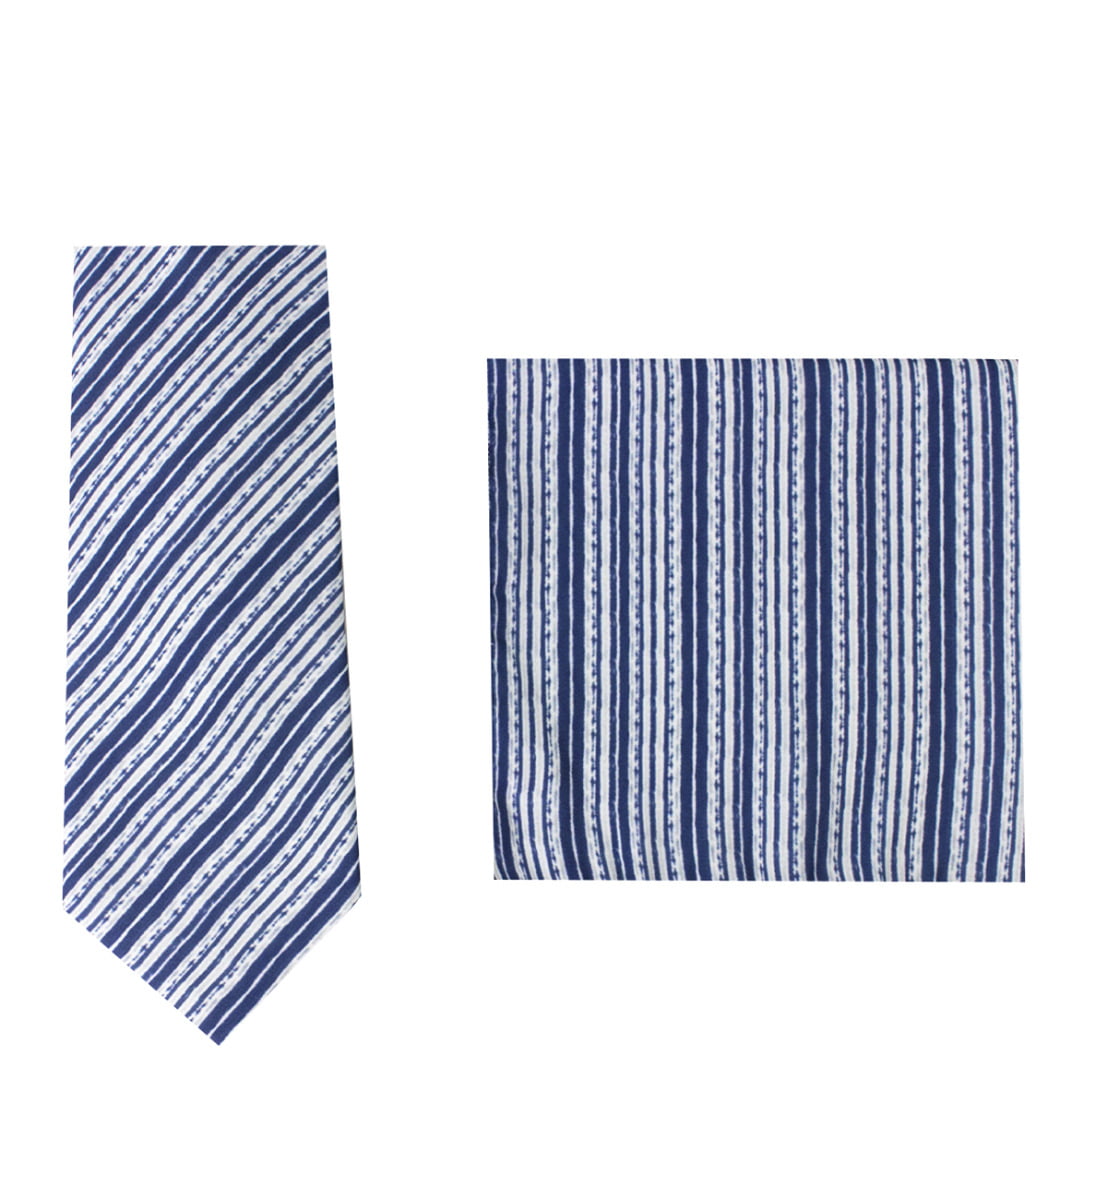 Cravatta a righe diagonali blu fantasia bianche compresa di pochette abbinata uomo